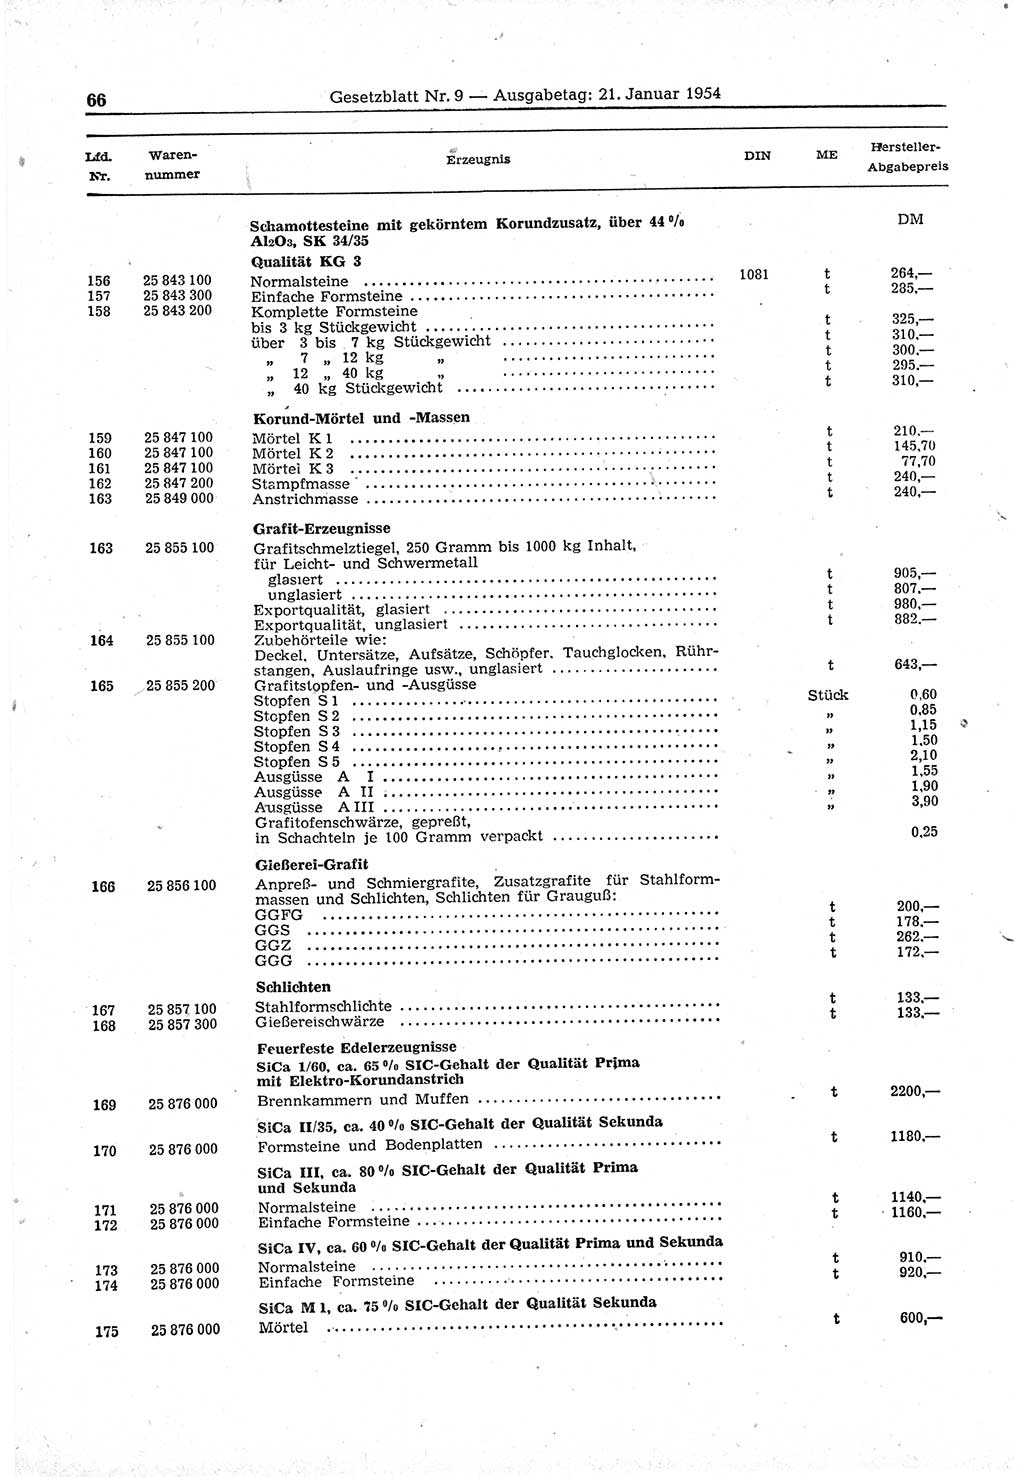 Gesetzblatt (GBl.) der Deutschen Demokratischen Republik (DDR) 1954, Seite 66 (GBl. DDR 1954, S. 66)